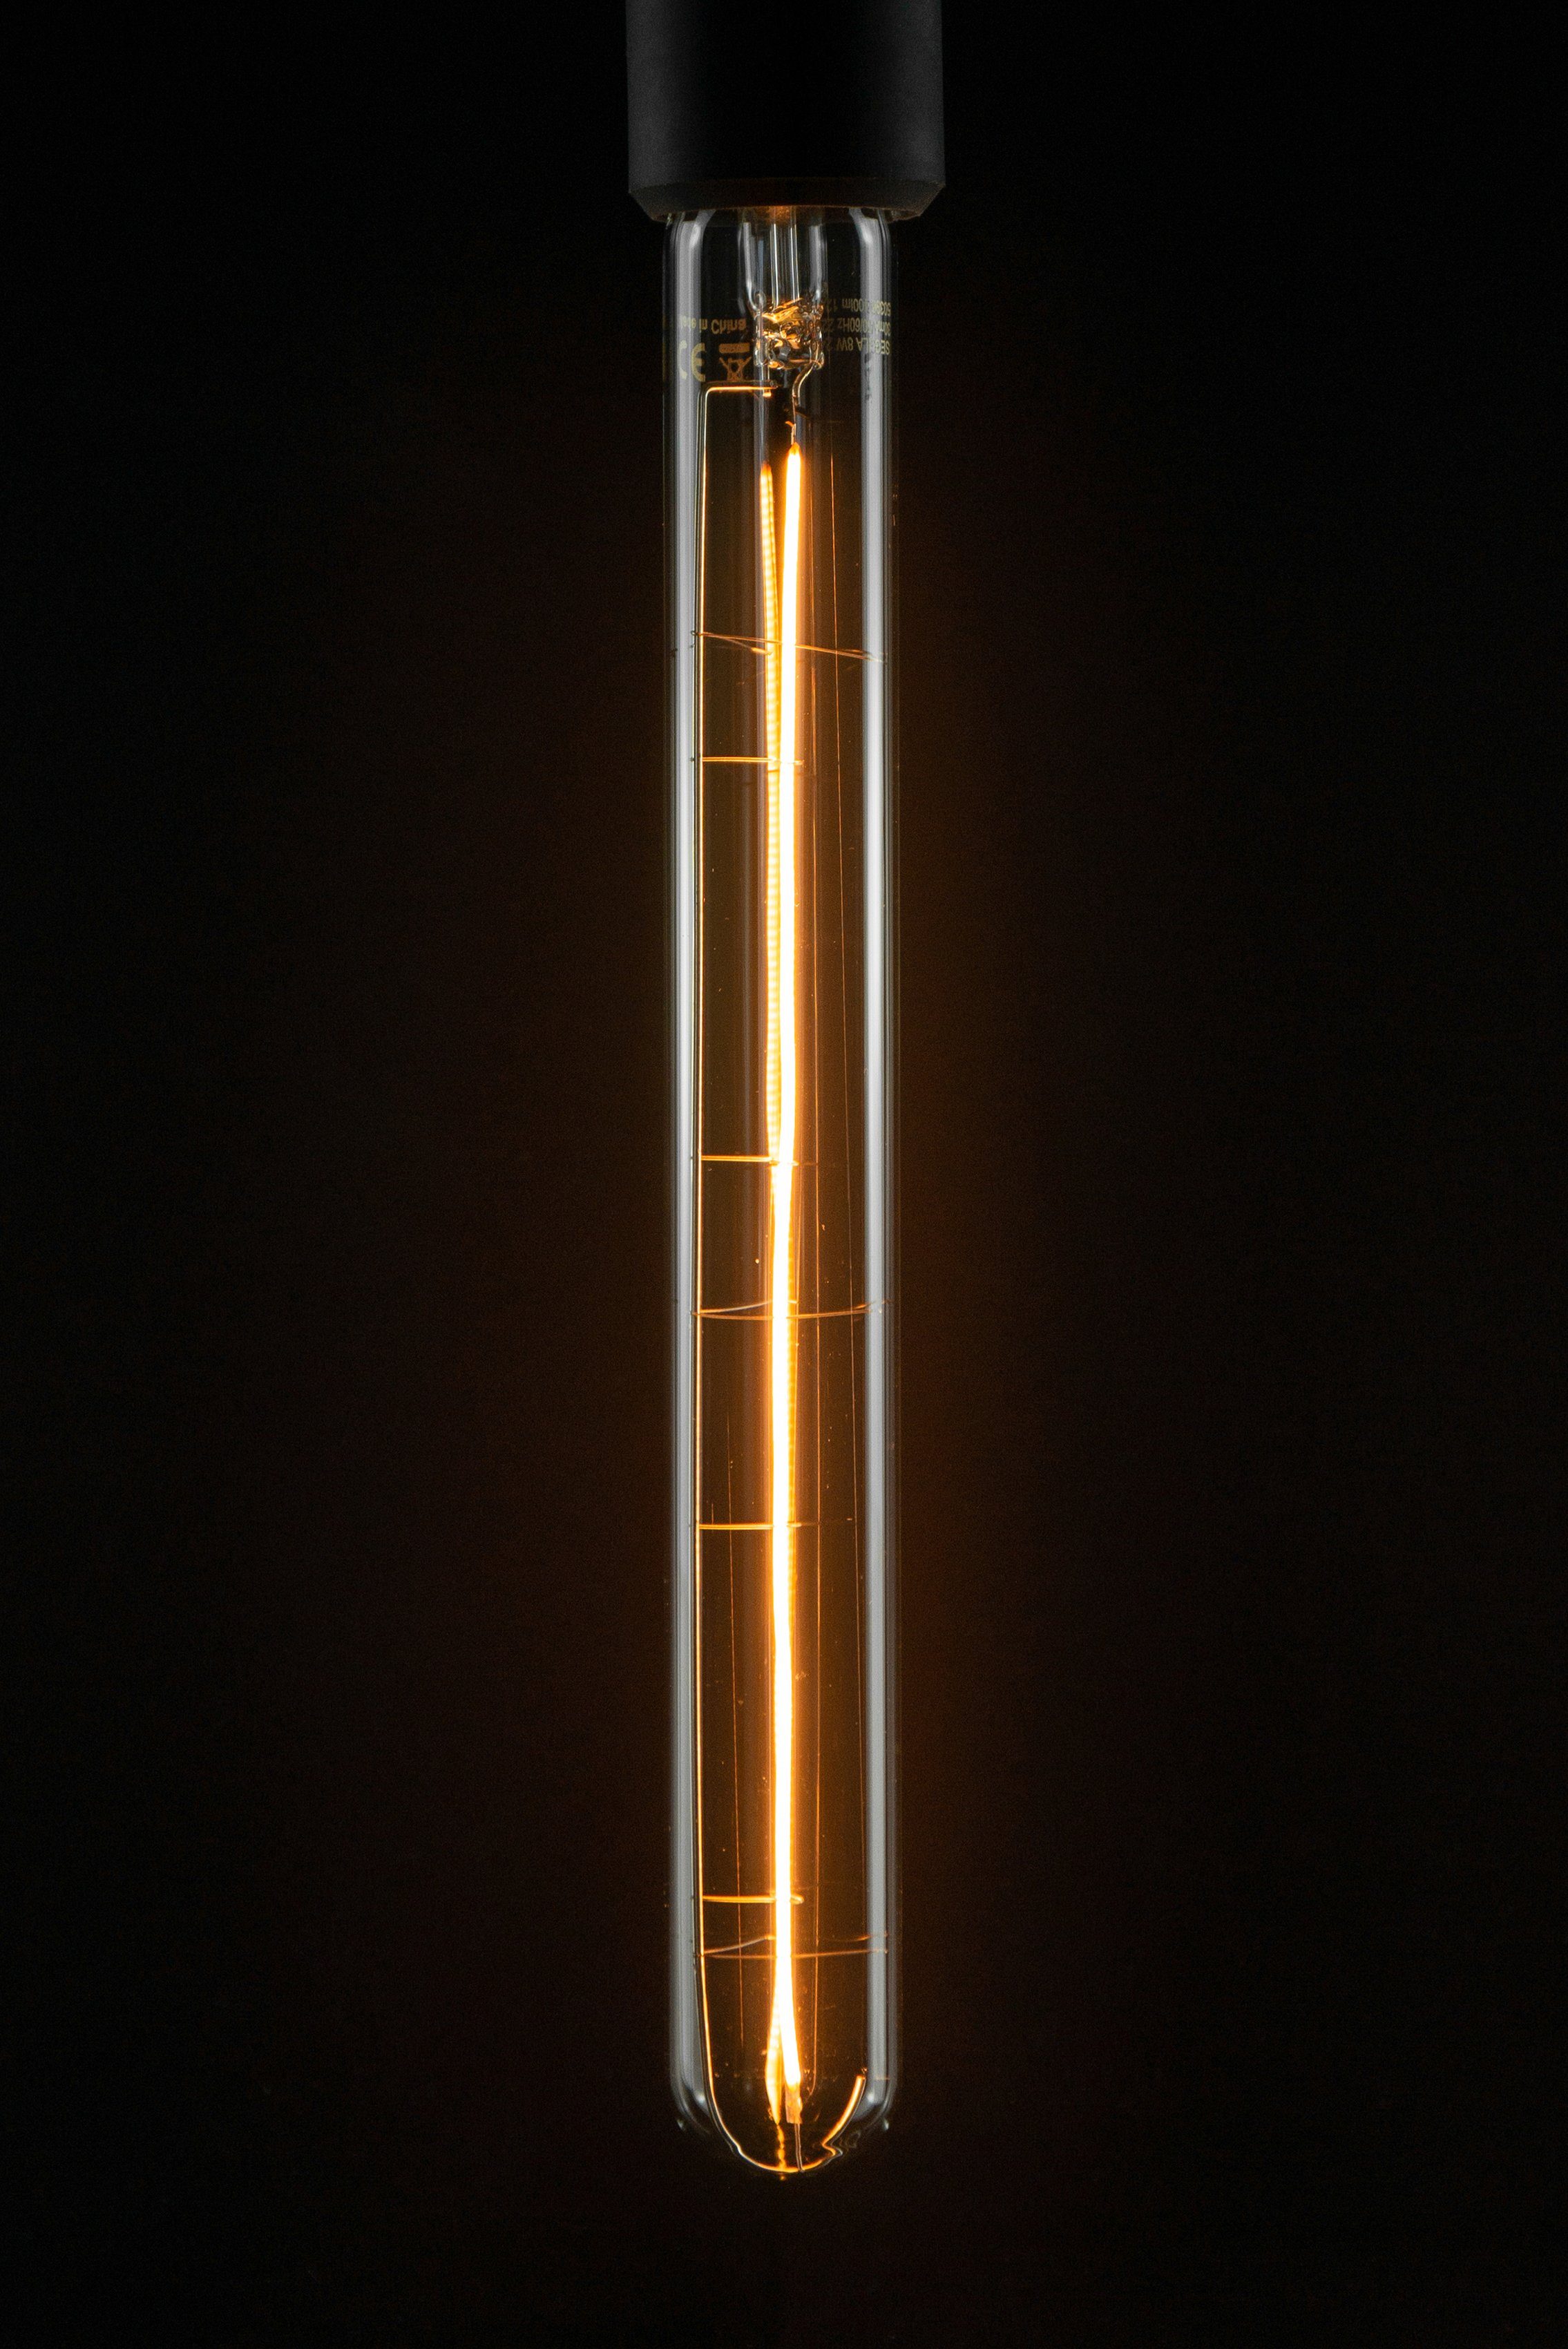 1900K 300 Long LED-Leuchtmittel Tube klar, klar, 300 Long Warmweiß, LED SEGULA dimmbar, E27, E27, Tube